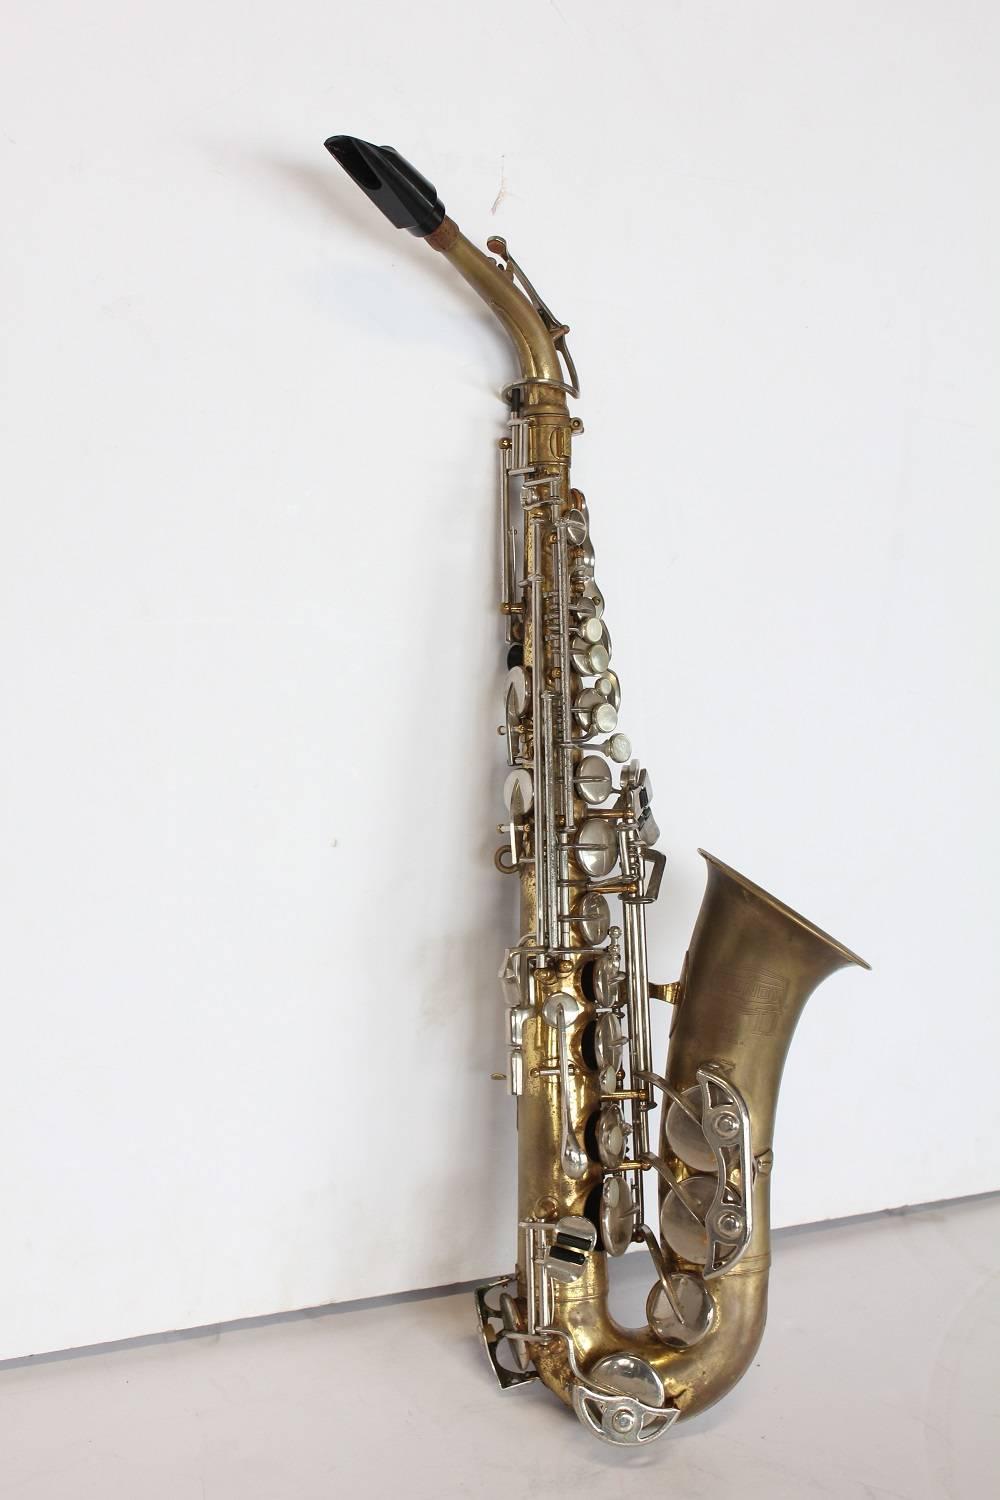 Vintage Selmer brass Tenor Saxophone Bundy II. Serial number 973837.